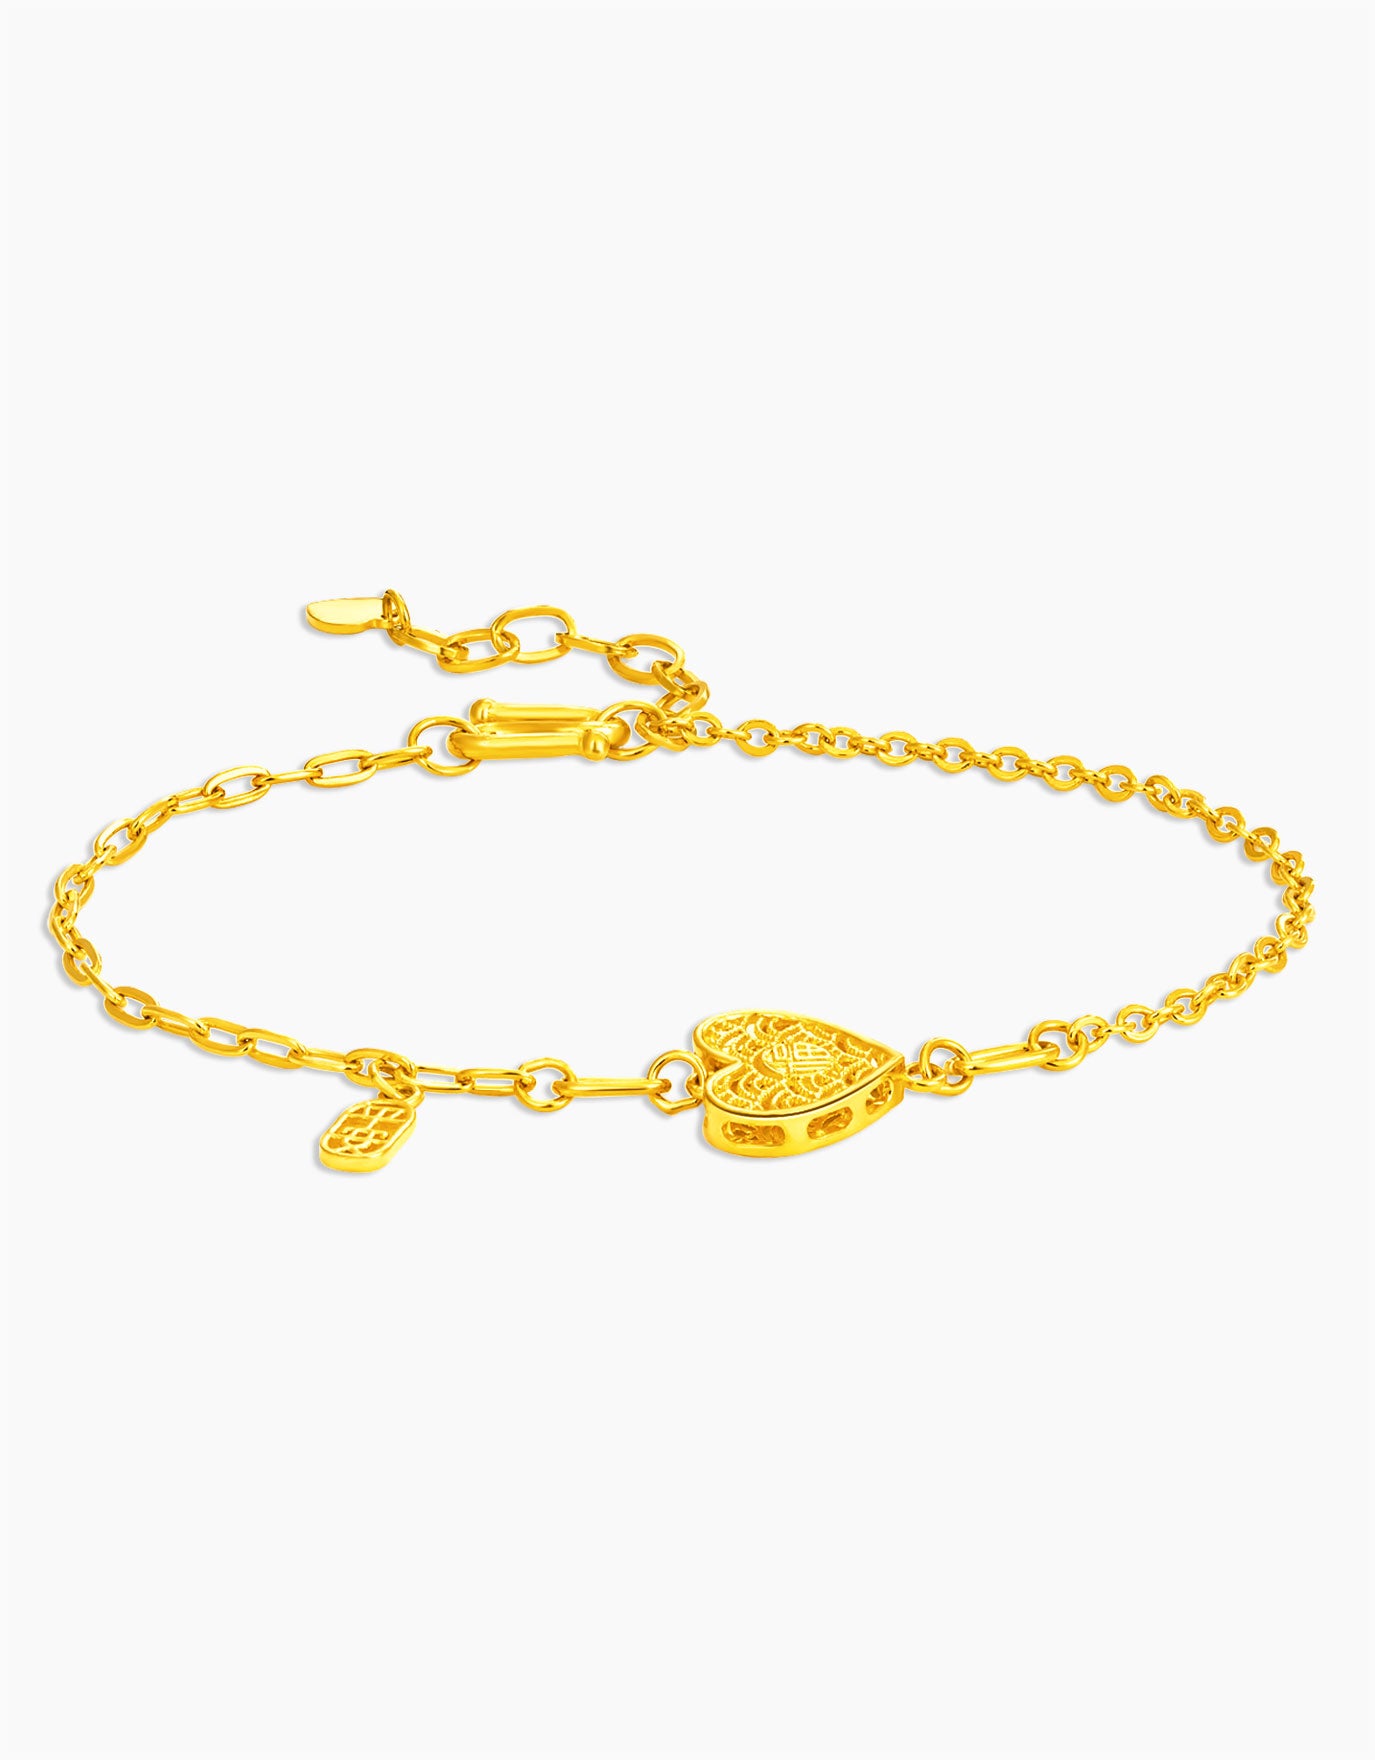 LVC 9IN Tangled in Love 999 Gold Bracelet